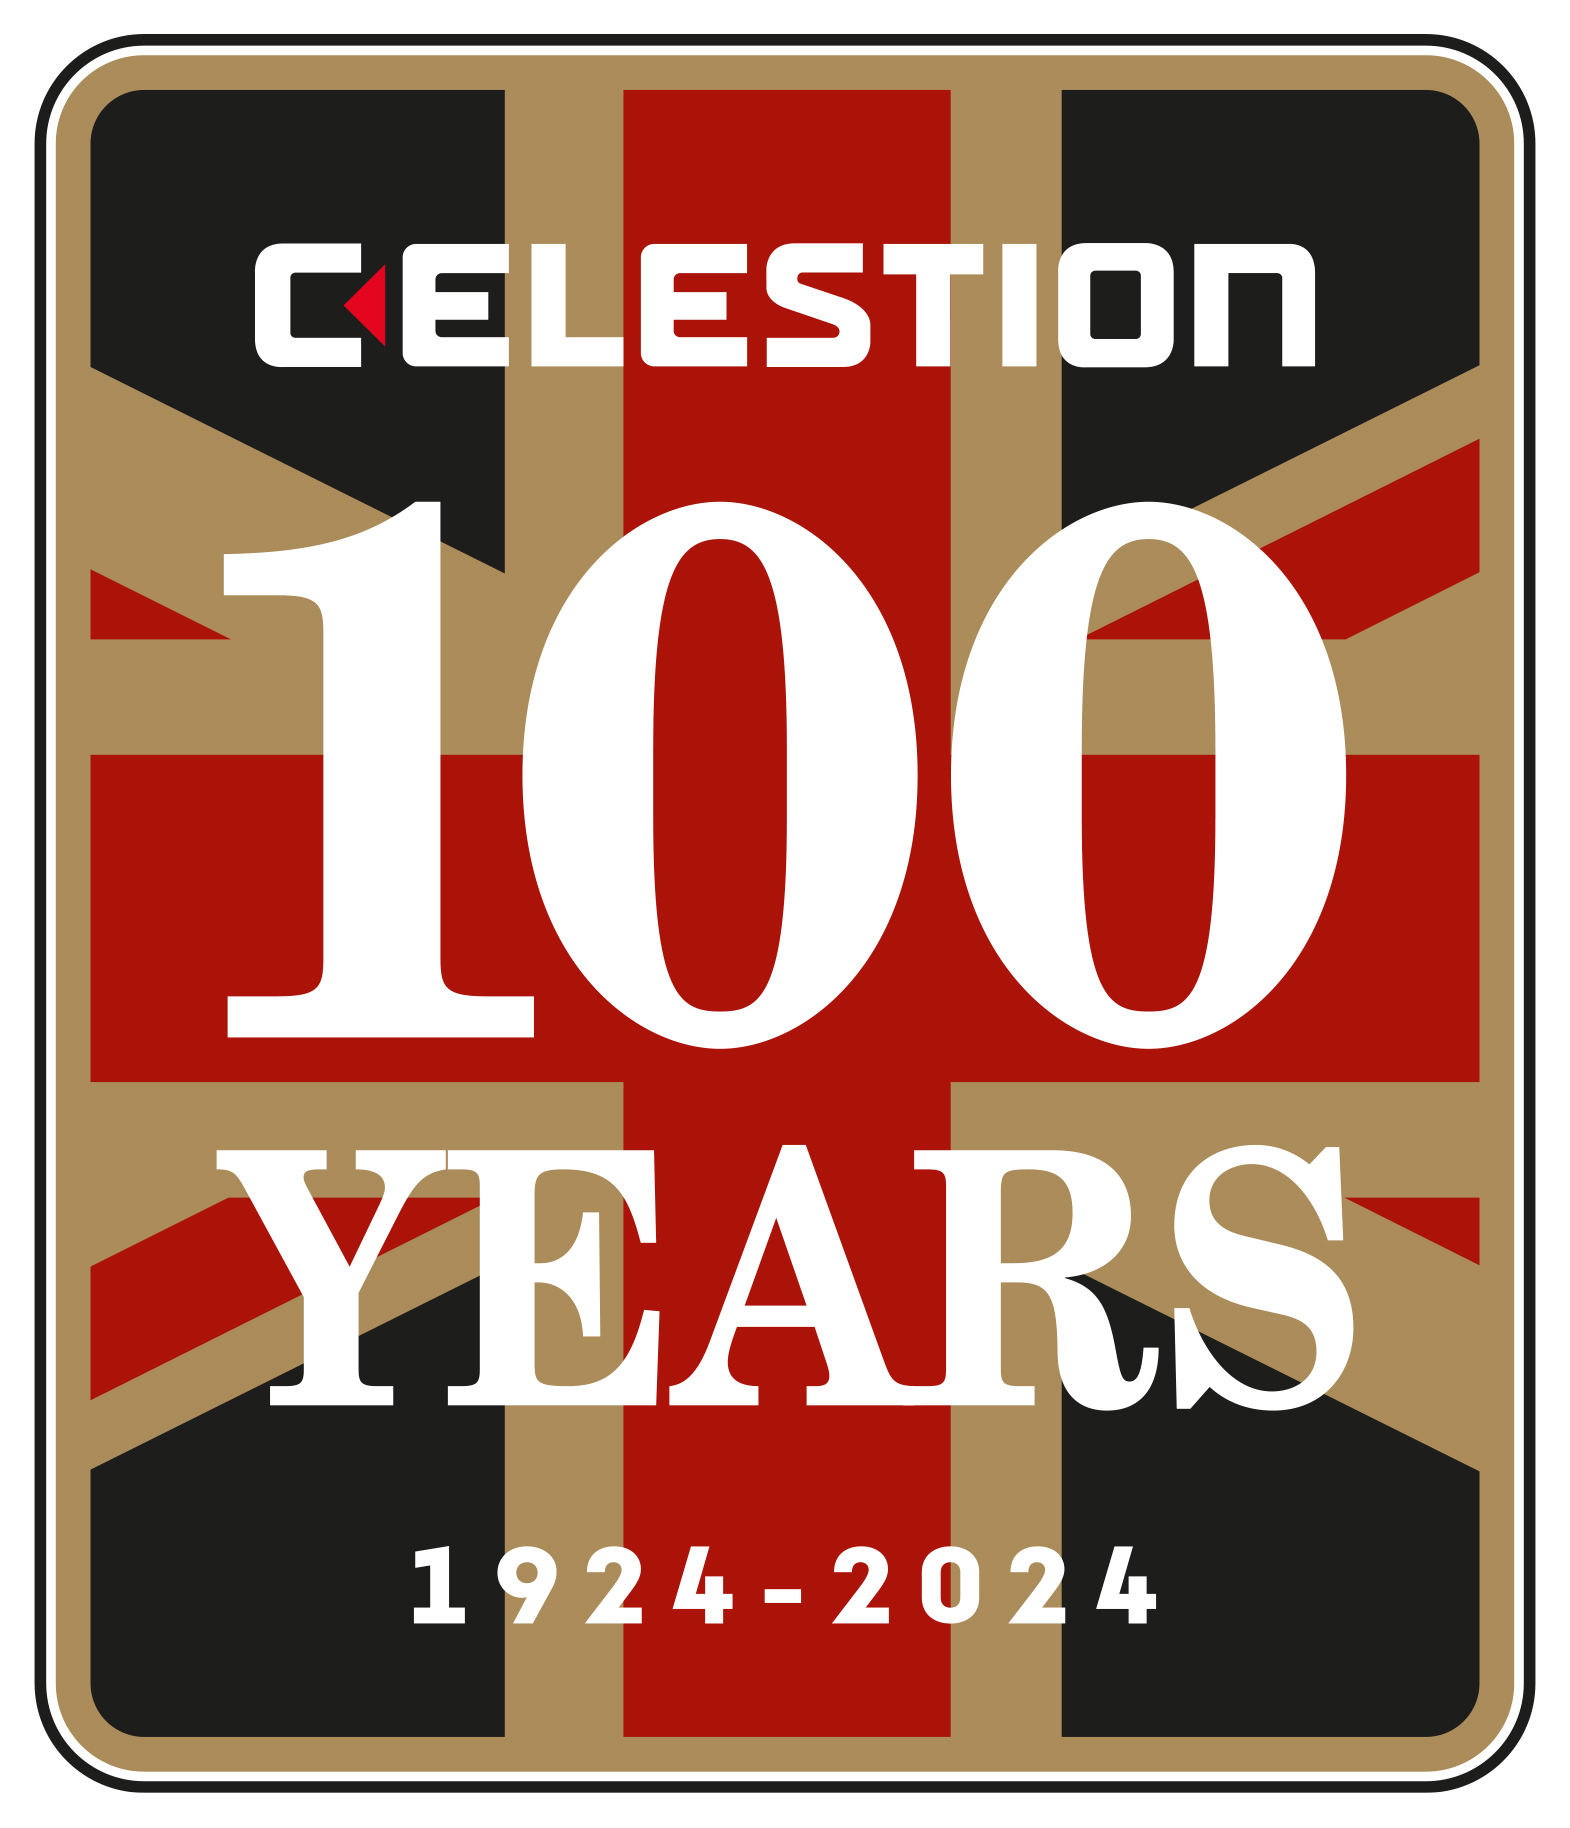 Celestion celebrates 100 years